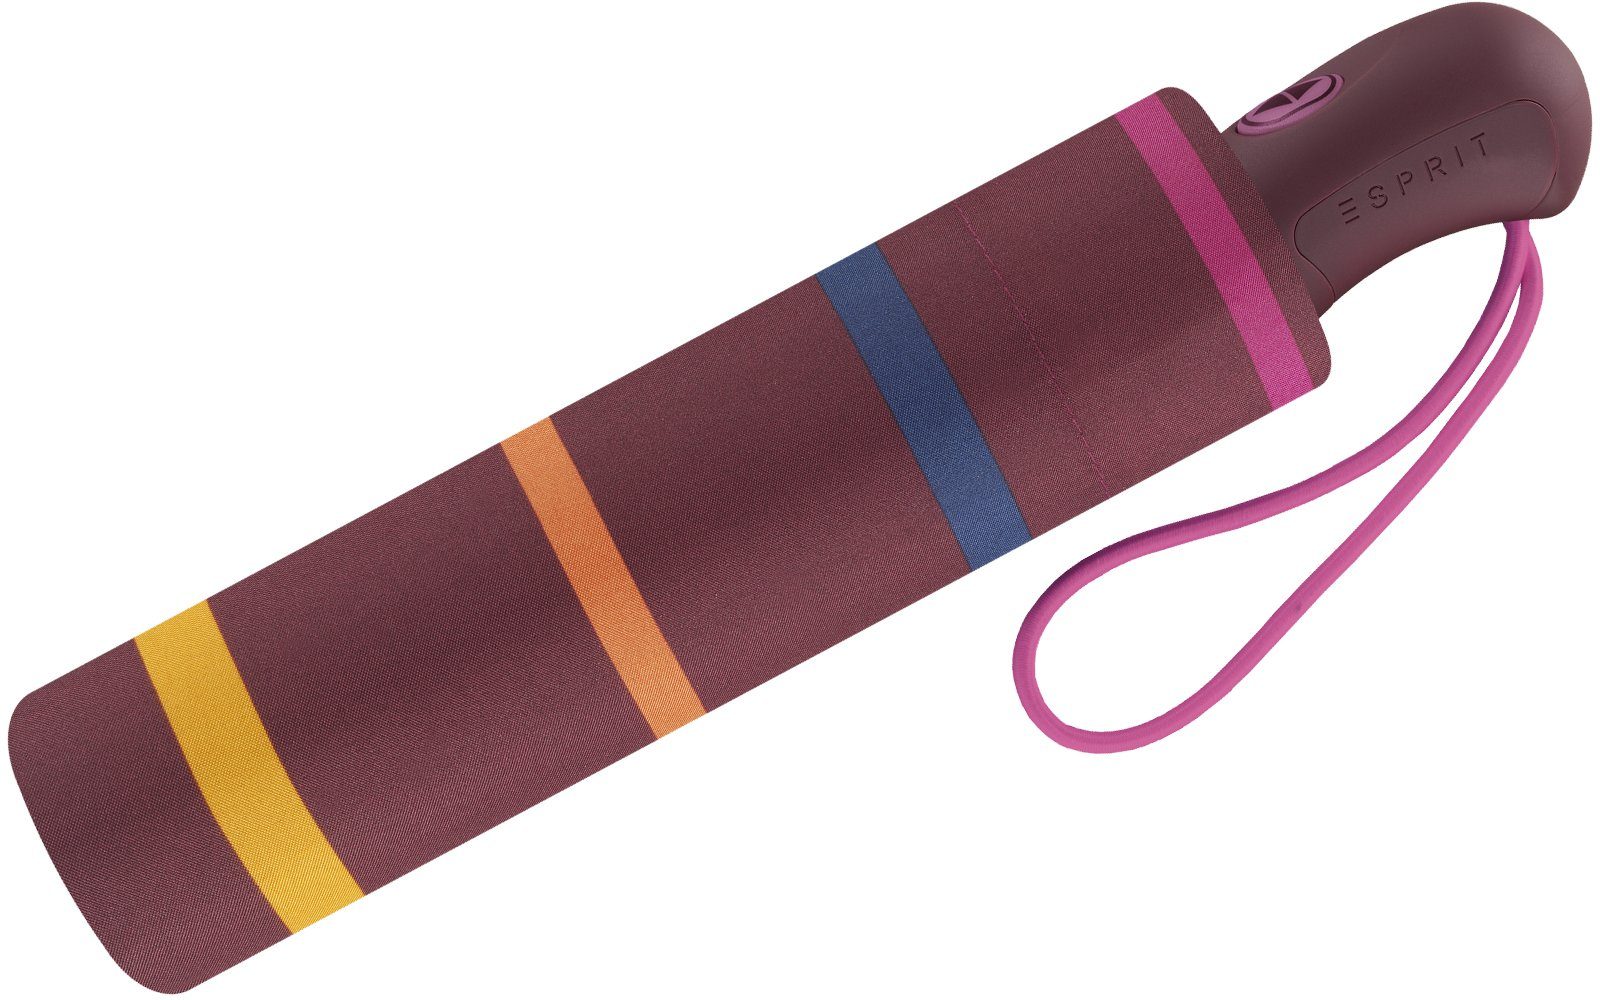 Farbtönen Schirm mit Esprit Taschenregenschirm mit Streifen Auf-Zu in warmen schöner Automatik, stabil, für Damen leicht,